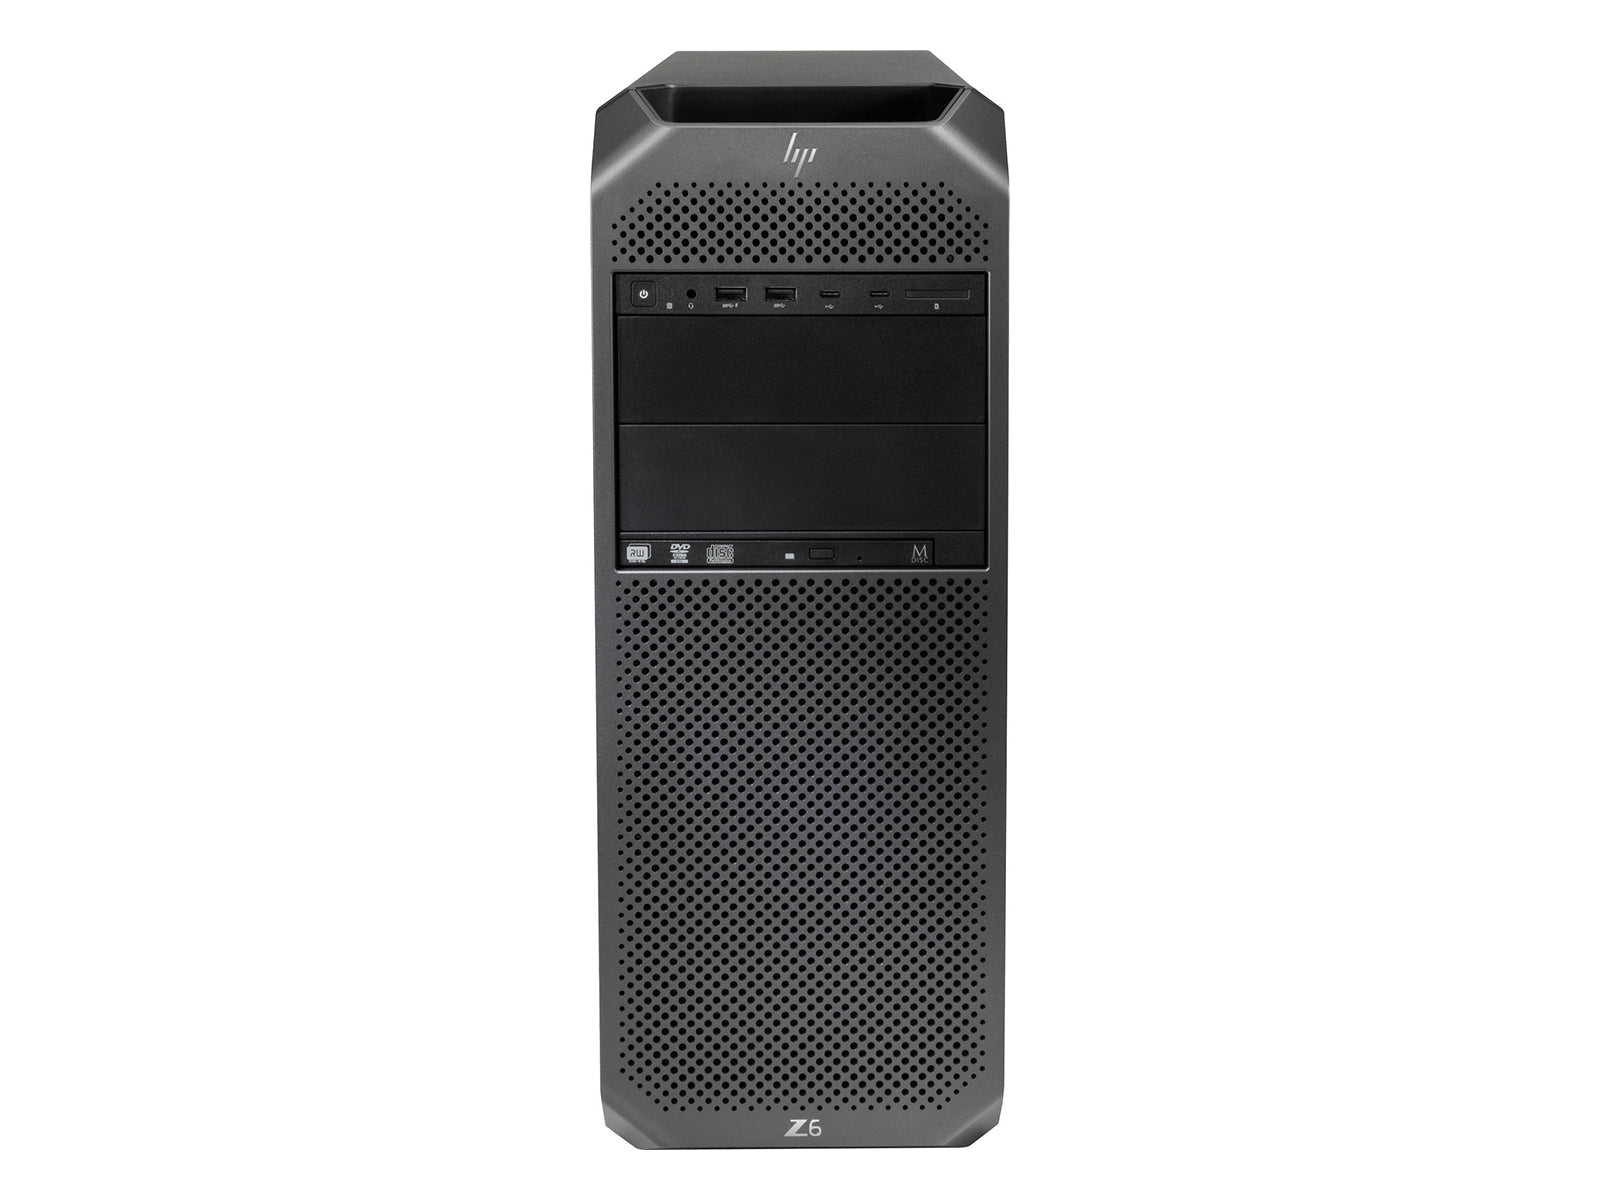 HP Z6 G4 Workstation | Intel Xeon Silver 4108 @ 3.0GHz | 8-Core | 64GB ECC DDR4 | 1TB SSD | MXRT-5600 | Win10 Pro - Akumin Monitors.com 